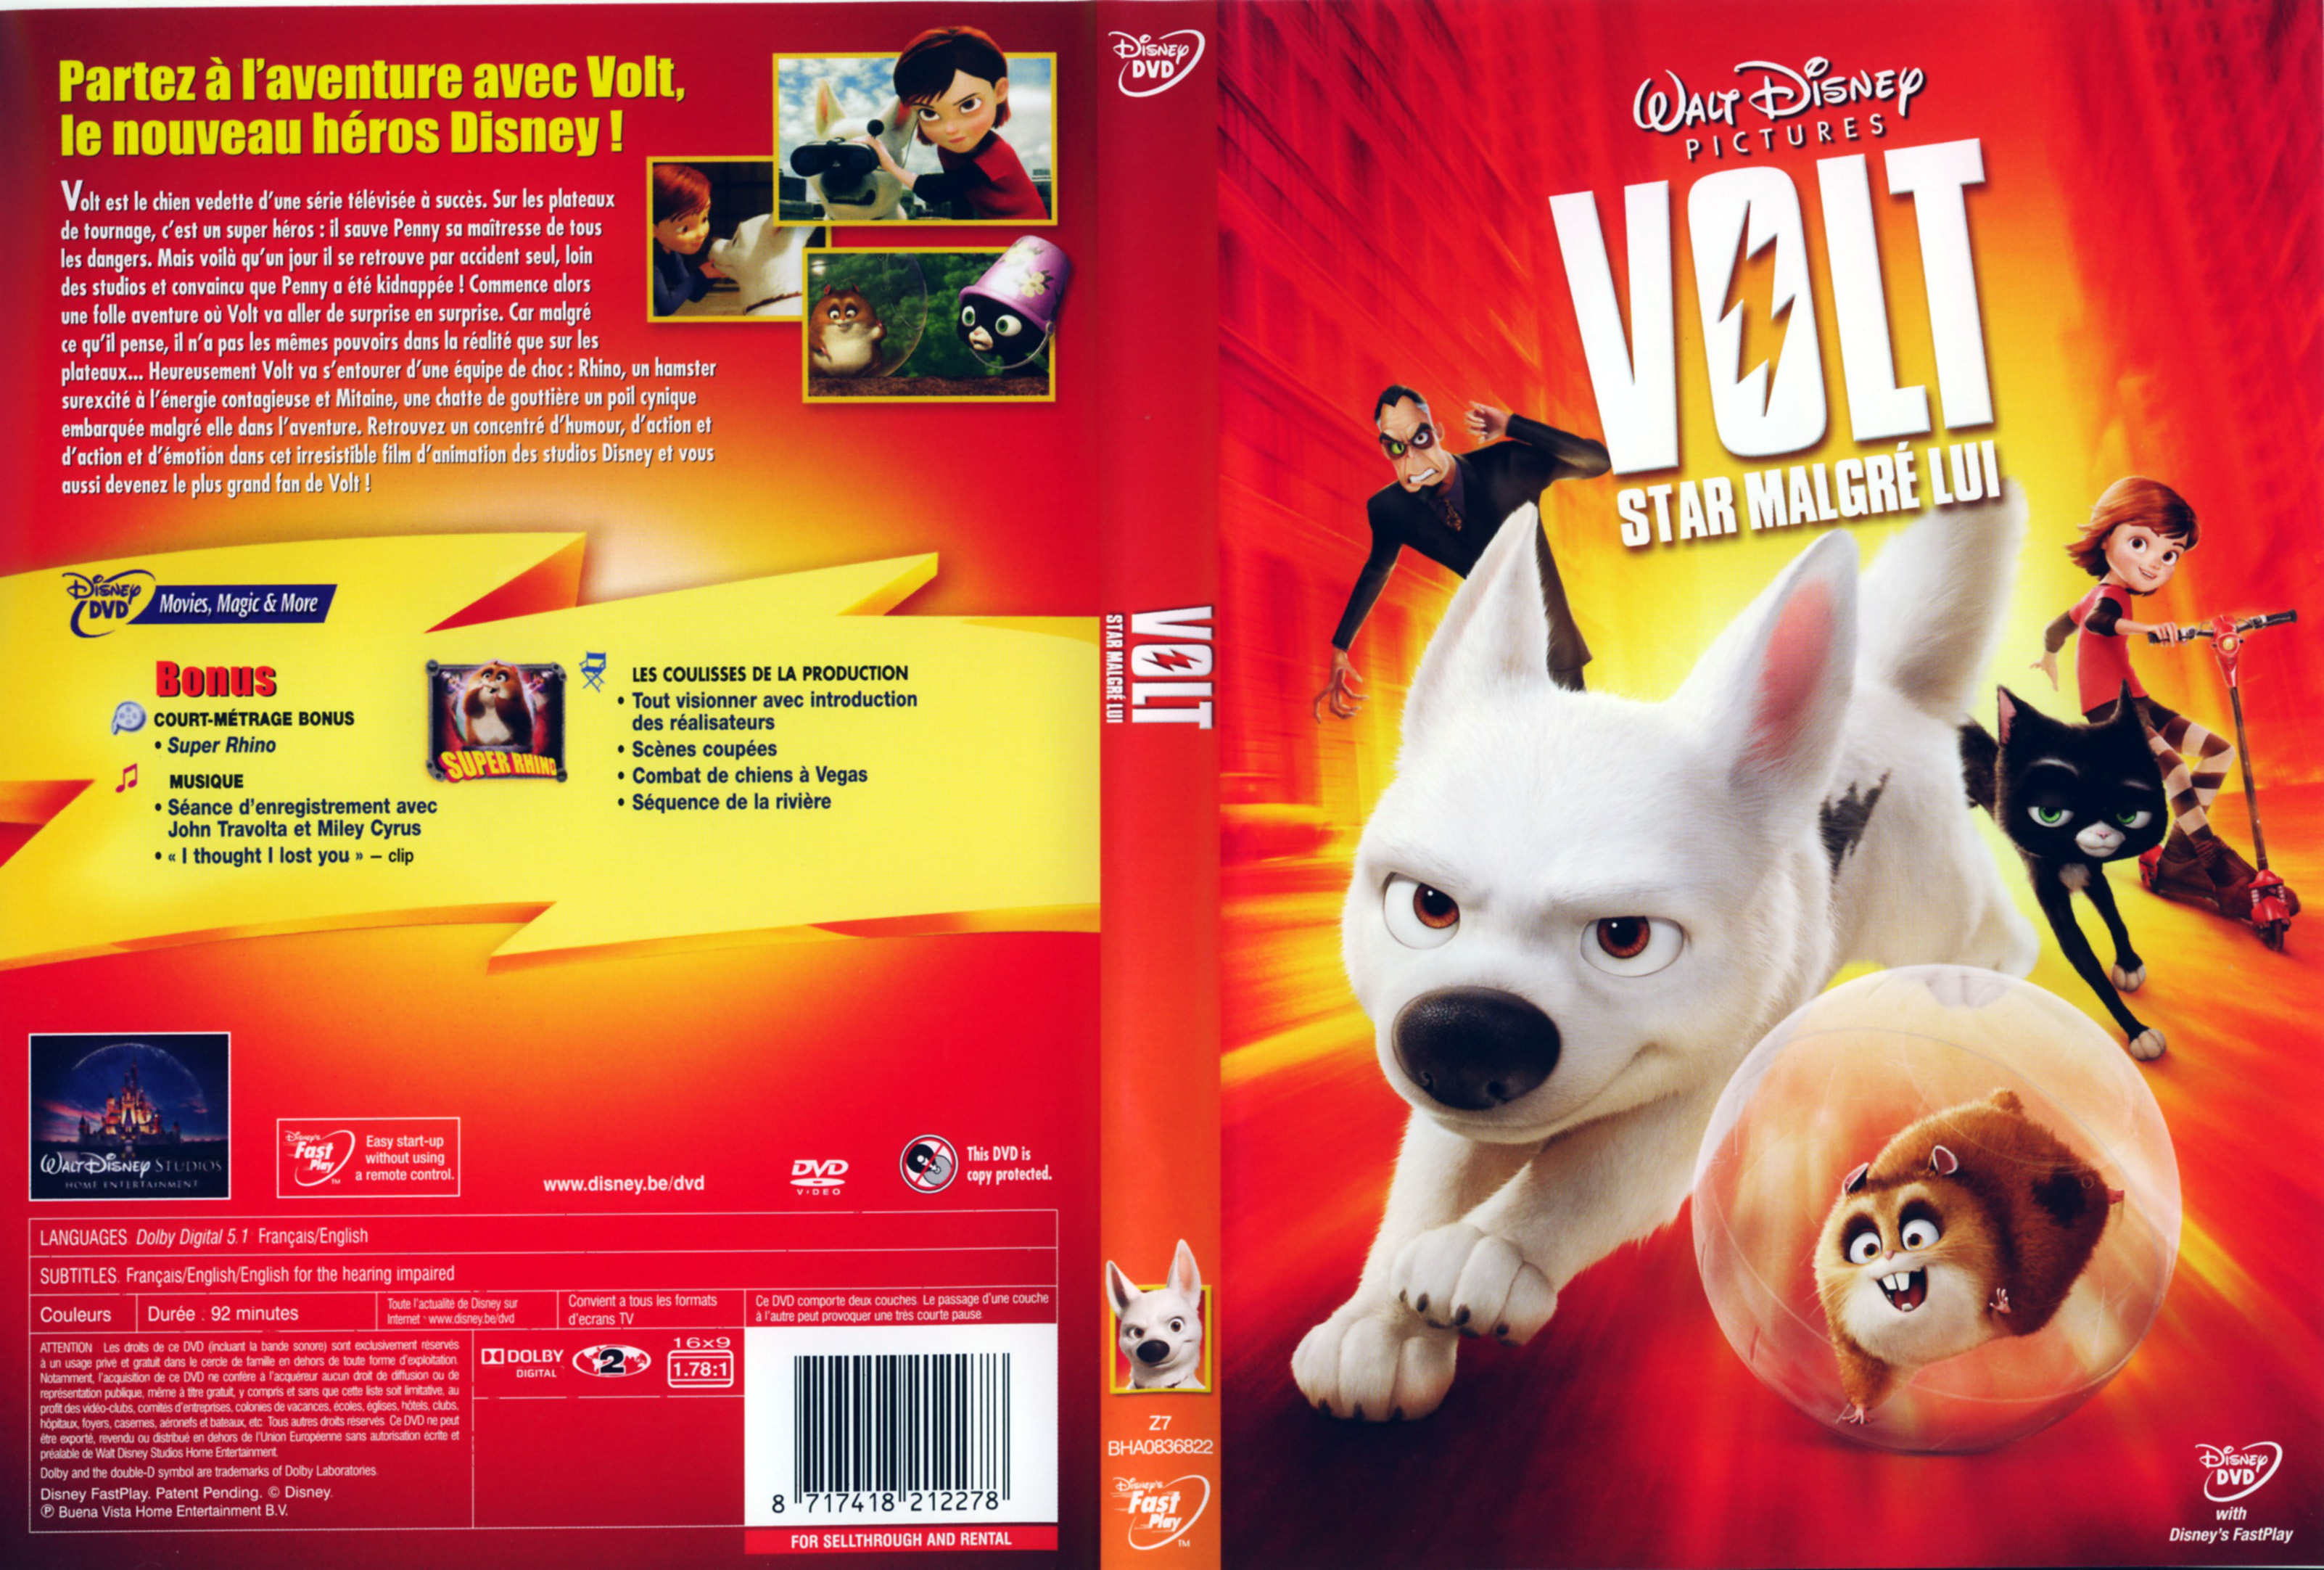 Star volt. Вольт (DVD). Disney вольт ps3 обложка. Meier DVD вольт. Как назывался сборник мультиков на двд Волт Дисней.